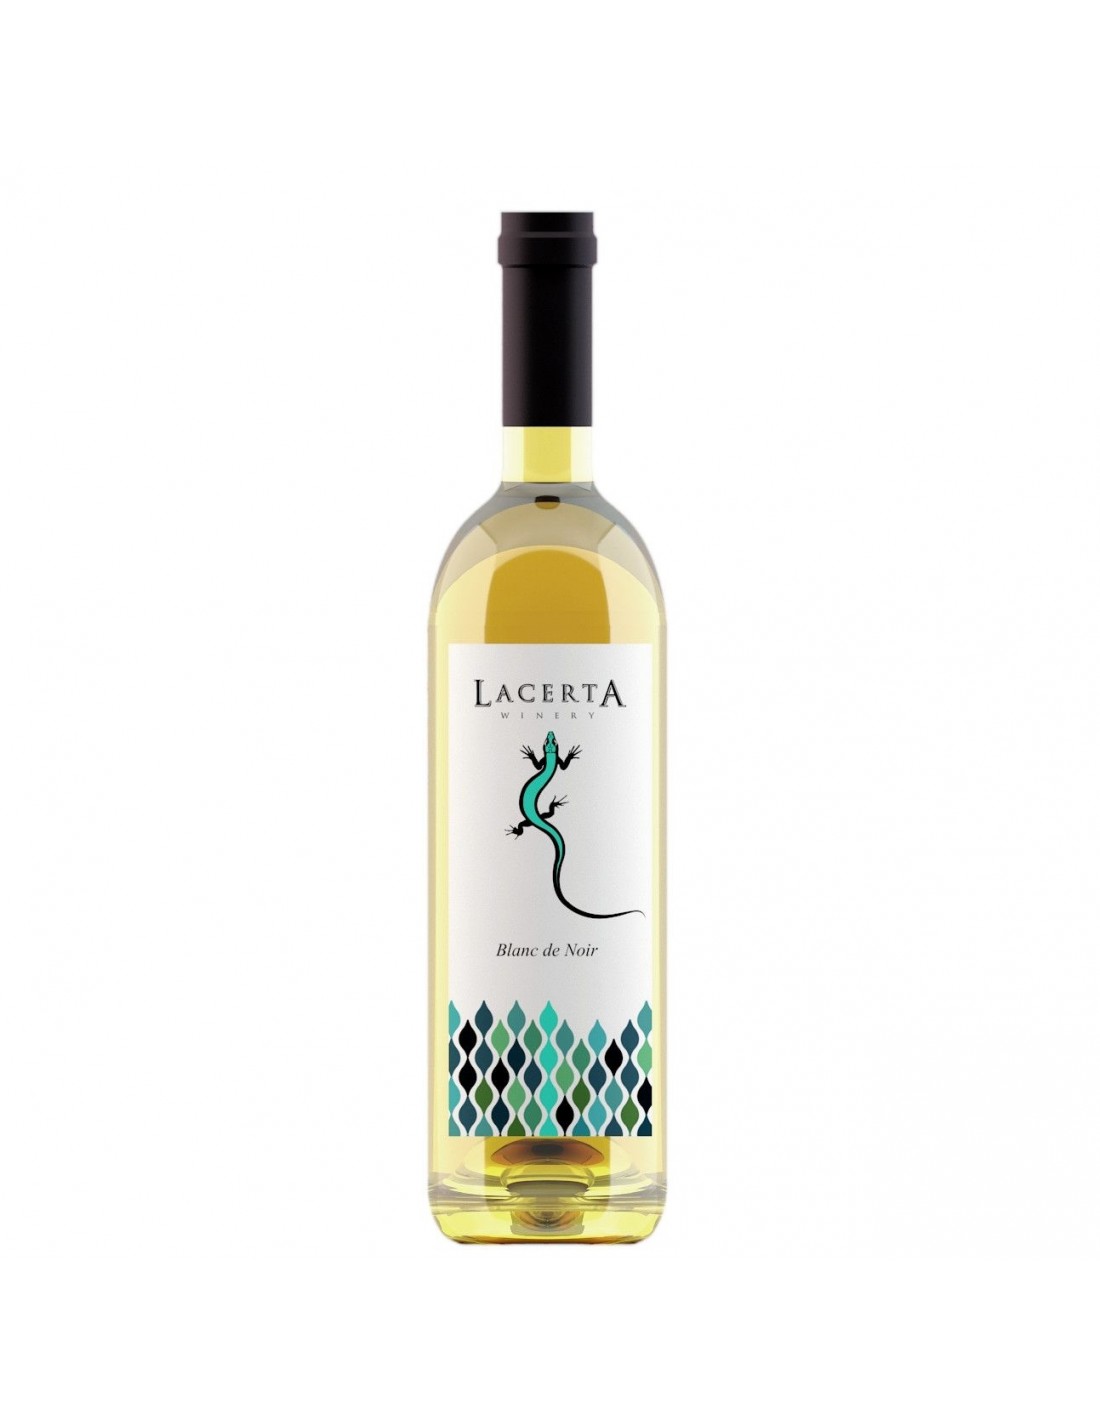 Vin roze sec, Blanc de Noir, Lacerta Dealu Mare, 2018, 0.75L, 13.7% alc., Romania alcooldiscount.ro